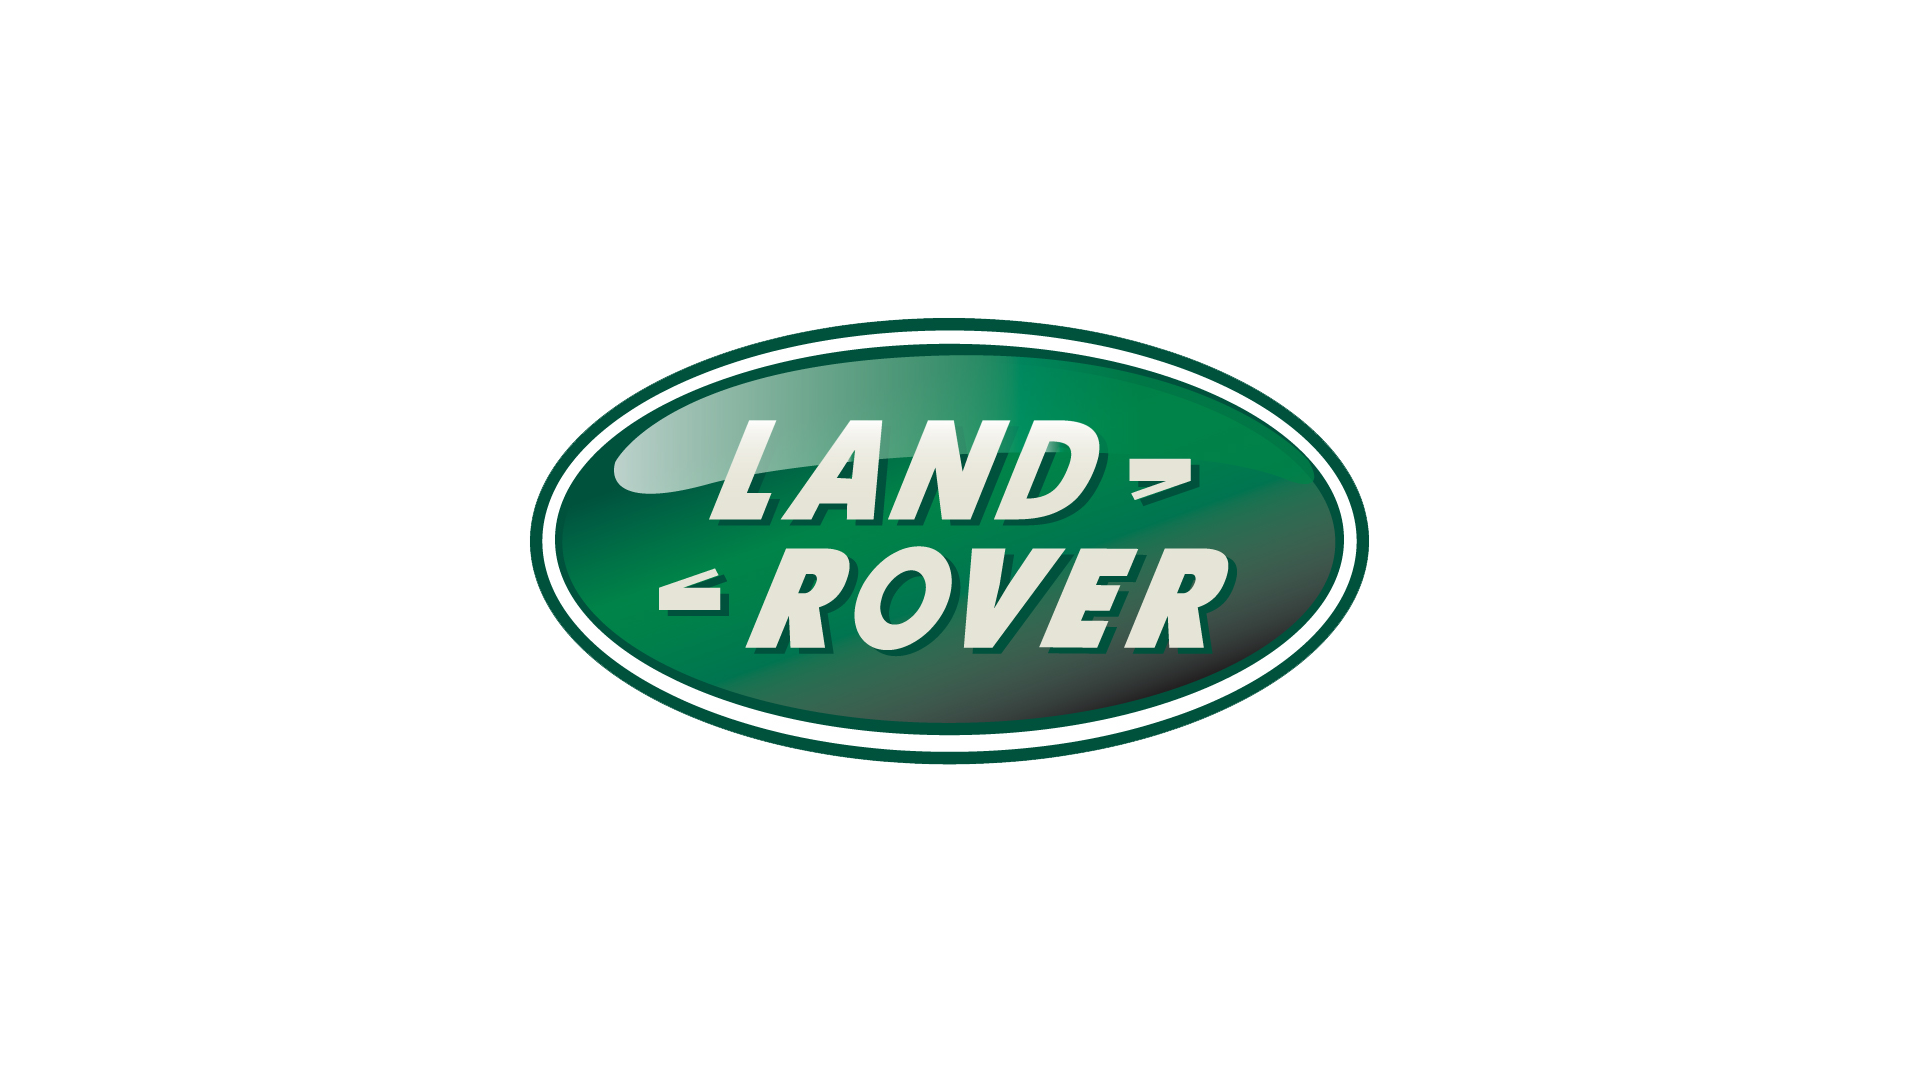 Land-Rover-logo-1989-1920x1080